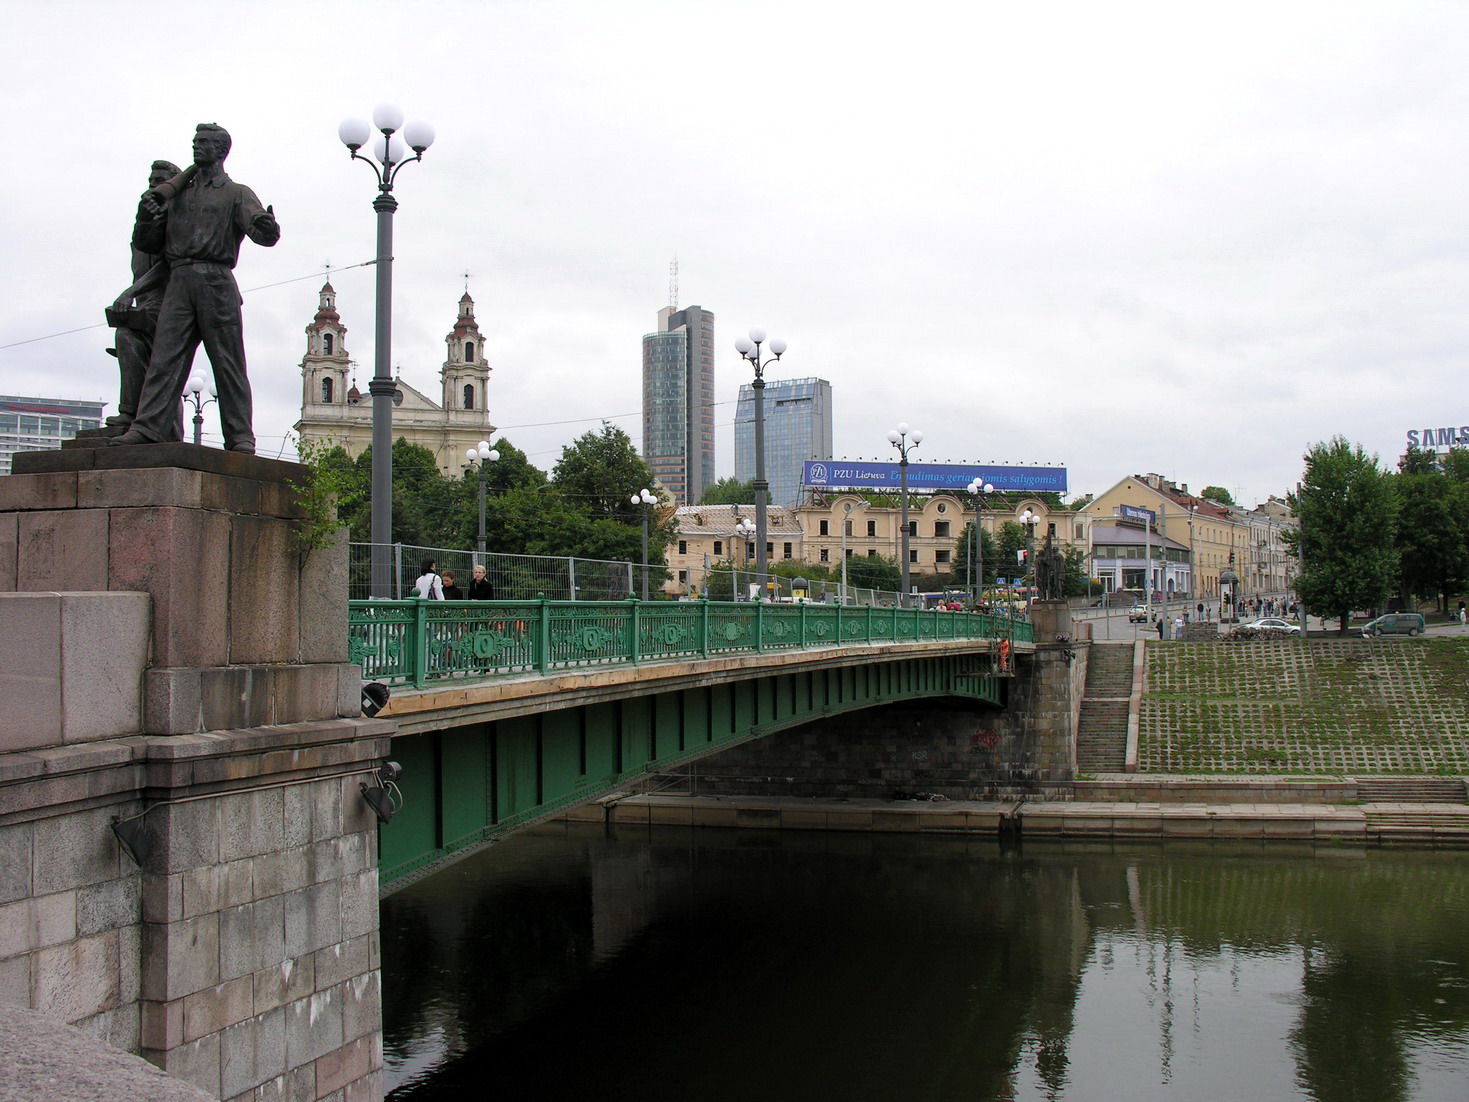 Prieš šešerius metus nukeltas sostinės Žaliojo tilto skulptūras Vilniaus miesto savivaldybė trečiadienį pranešė perduodanti Lietuvos nacionaliniam muziejui.